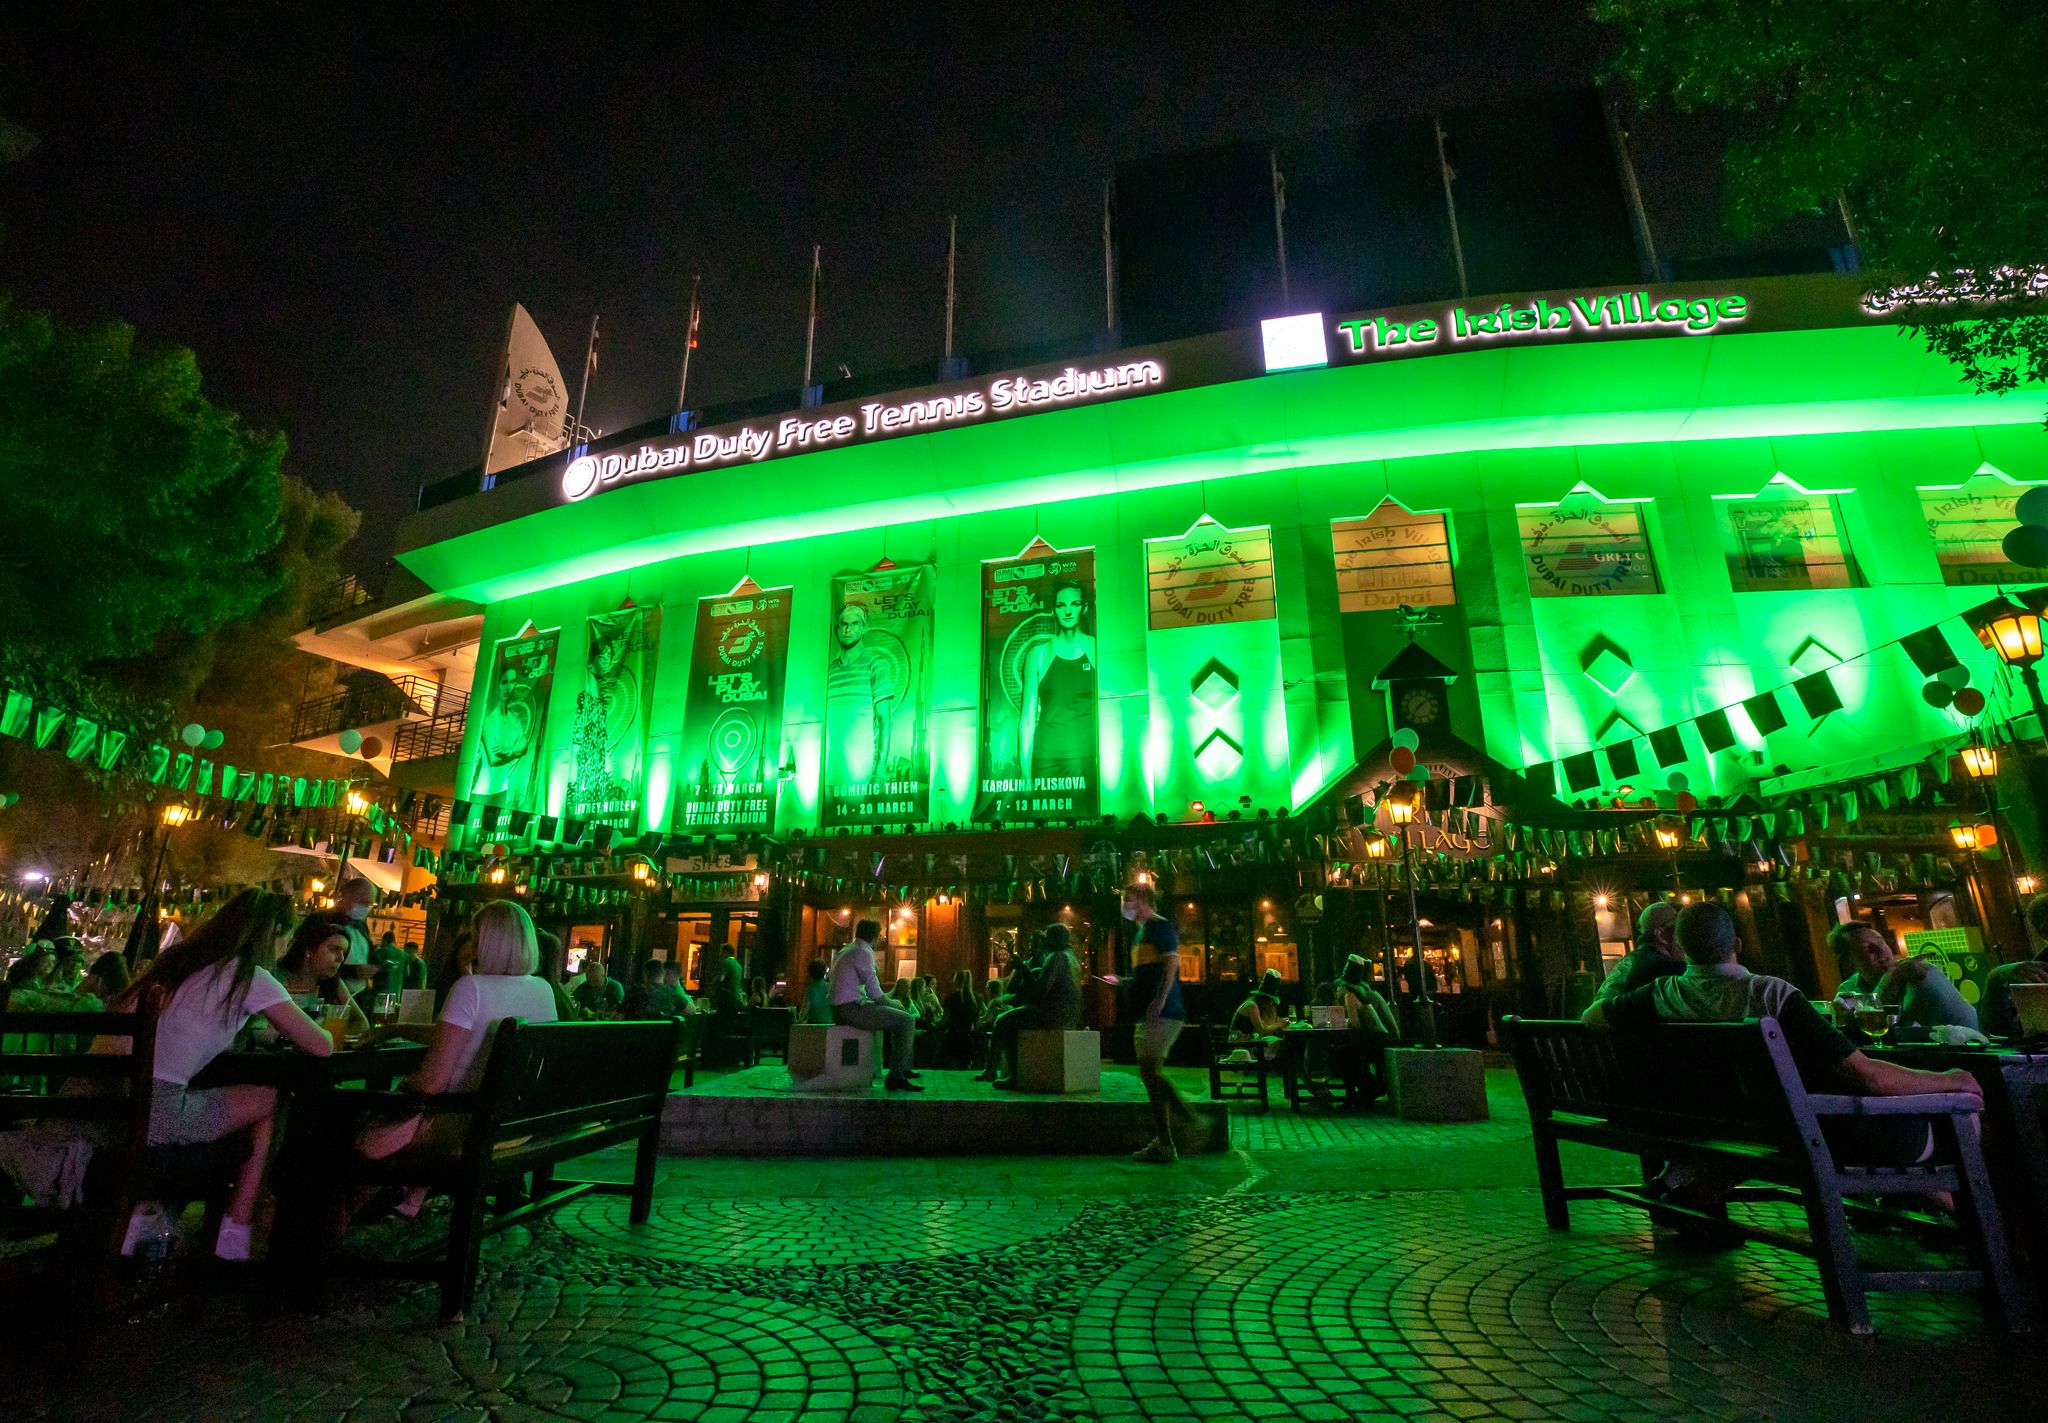 استاد سوق دبي الحرة للتنس يتألق باللون الأخضر احتفالاً باليوم الوطني الأيرلندي